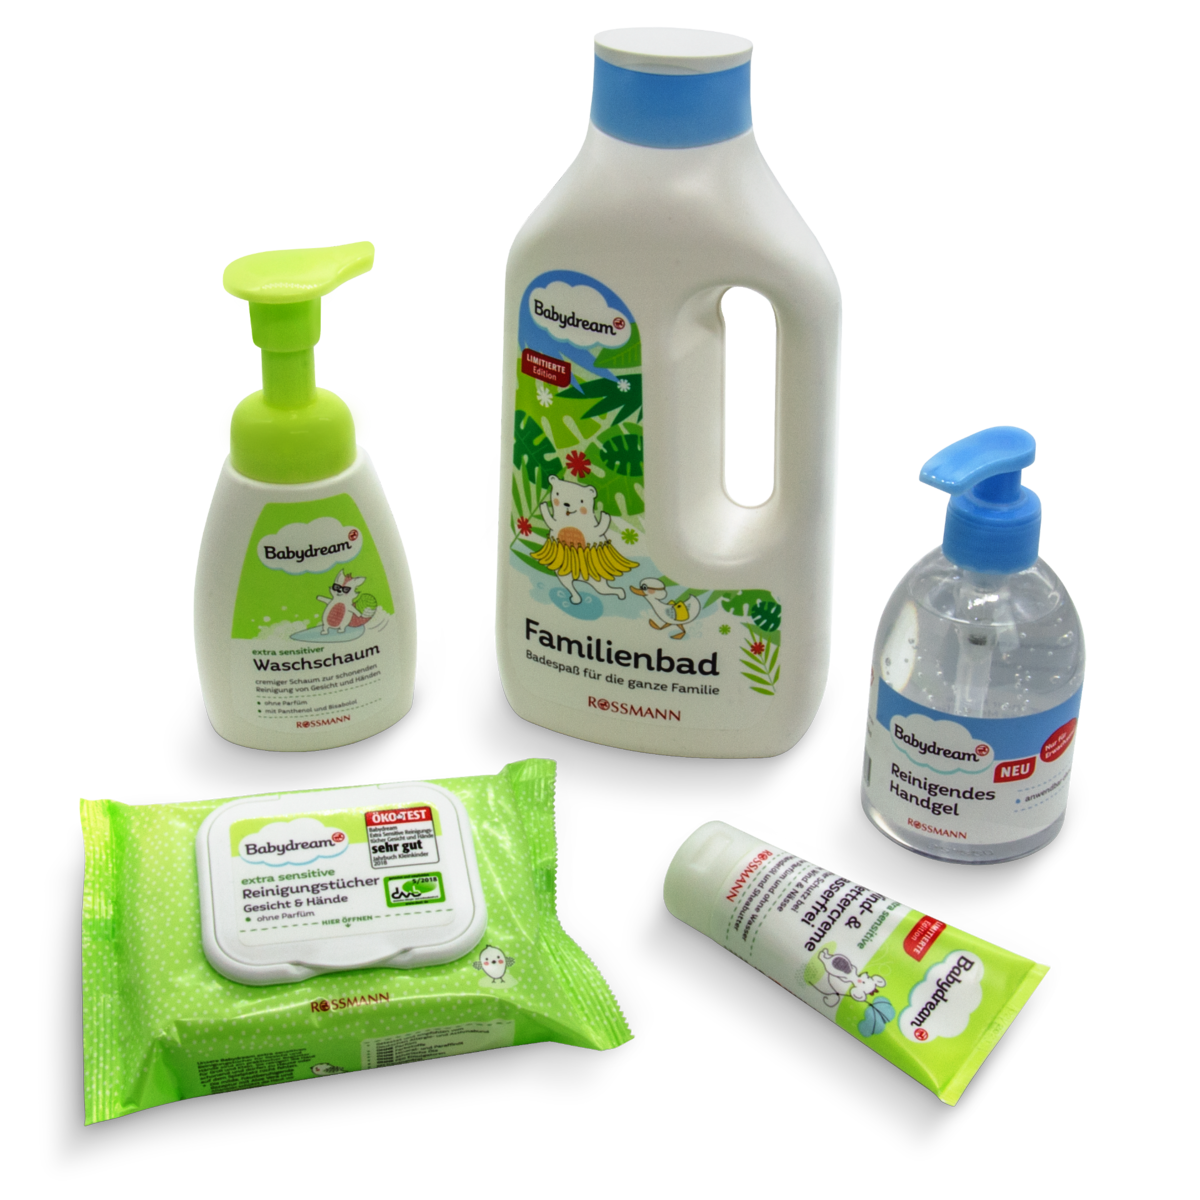 Fünf verschiedene Produktlabels und -verpackungen aus dem Bereich Hygiene der Rossmann-Eigenmarke Babydream.